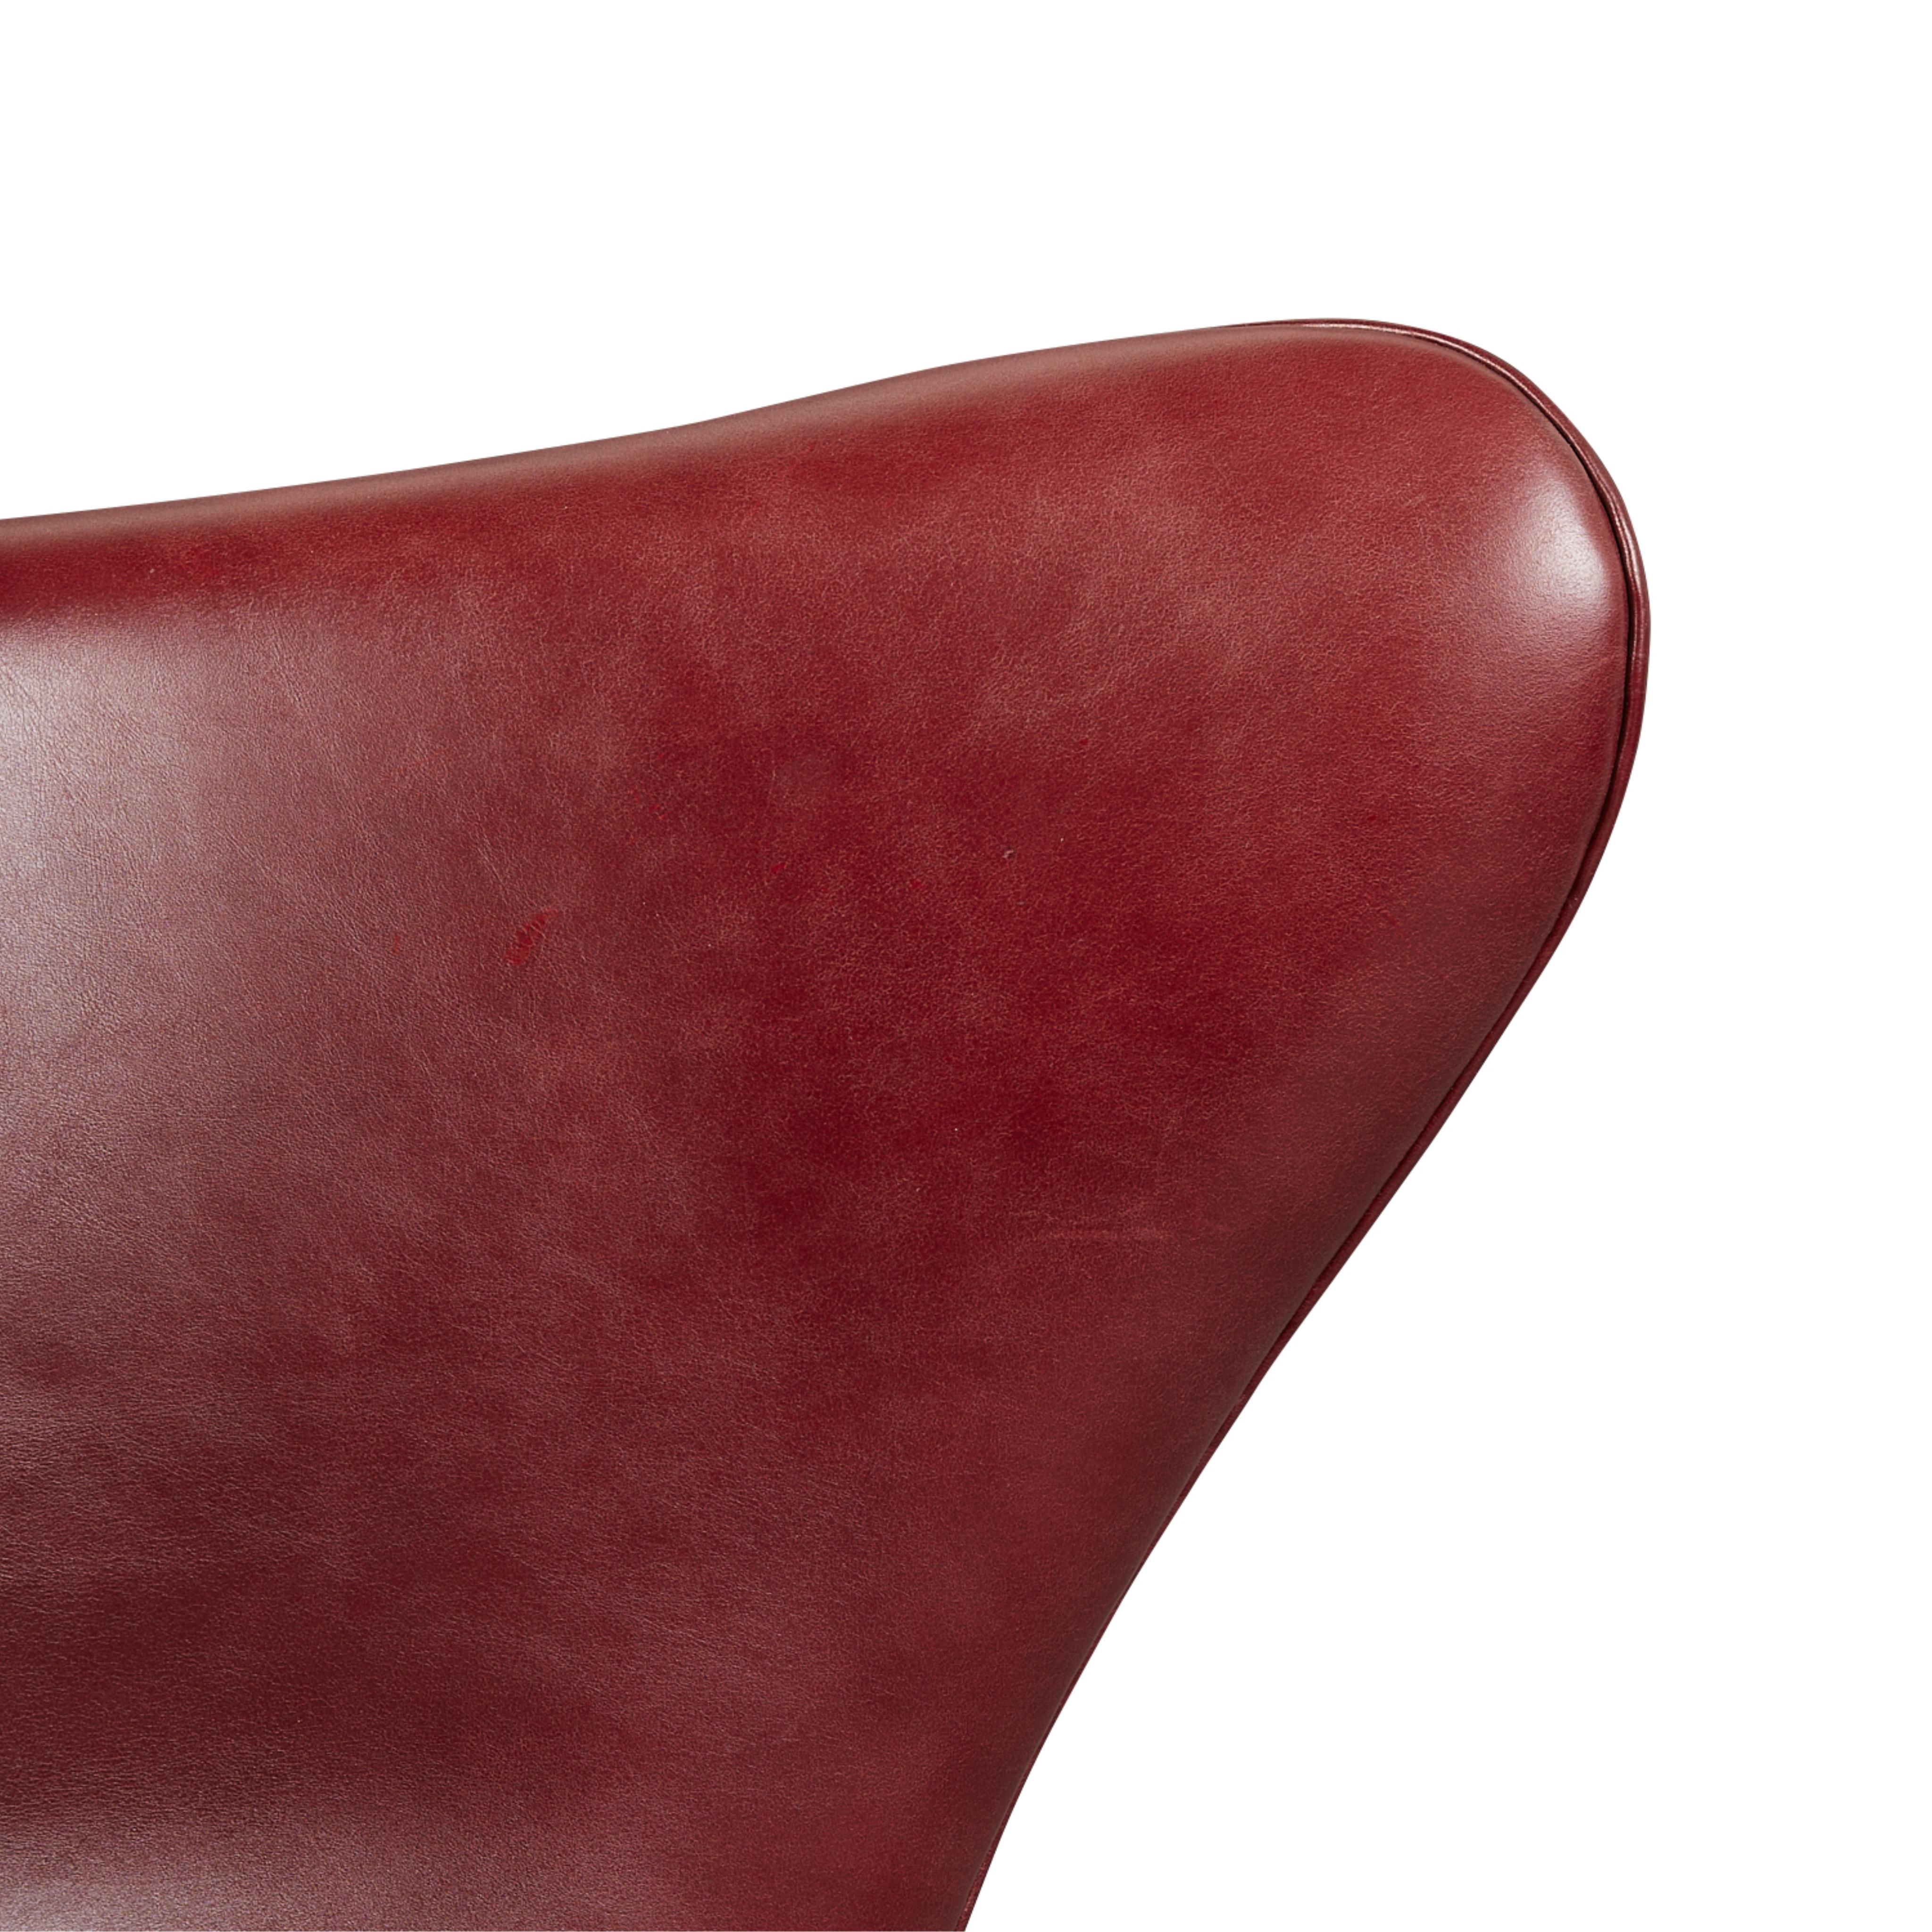 Arne Jacobsen for Hansen Leather Egg Chair 1964 - Image 13 of 17